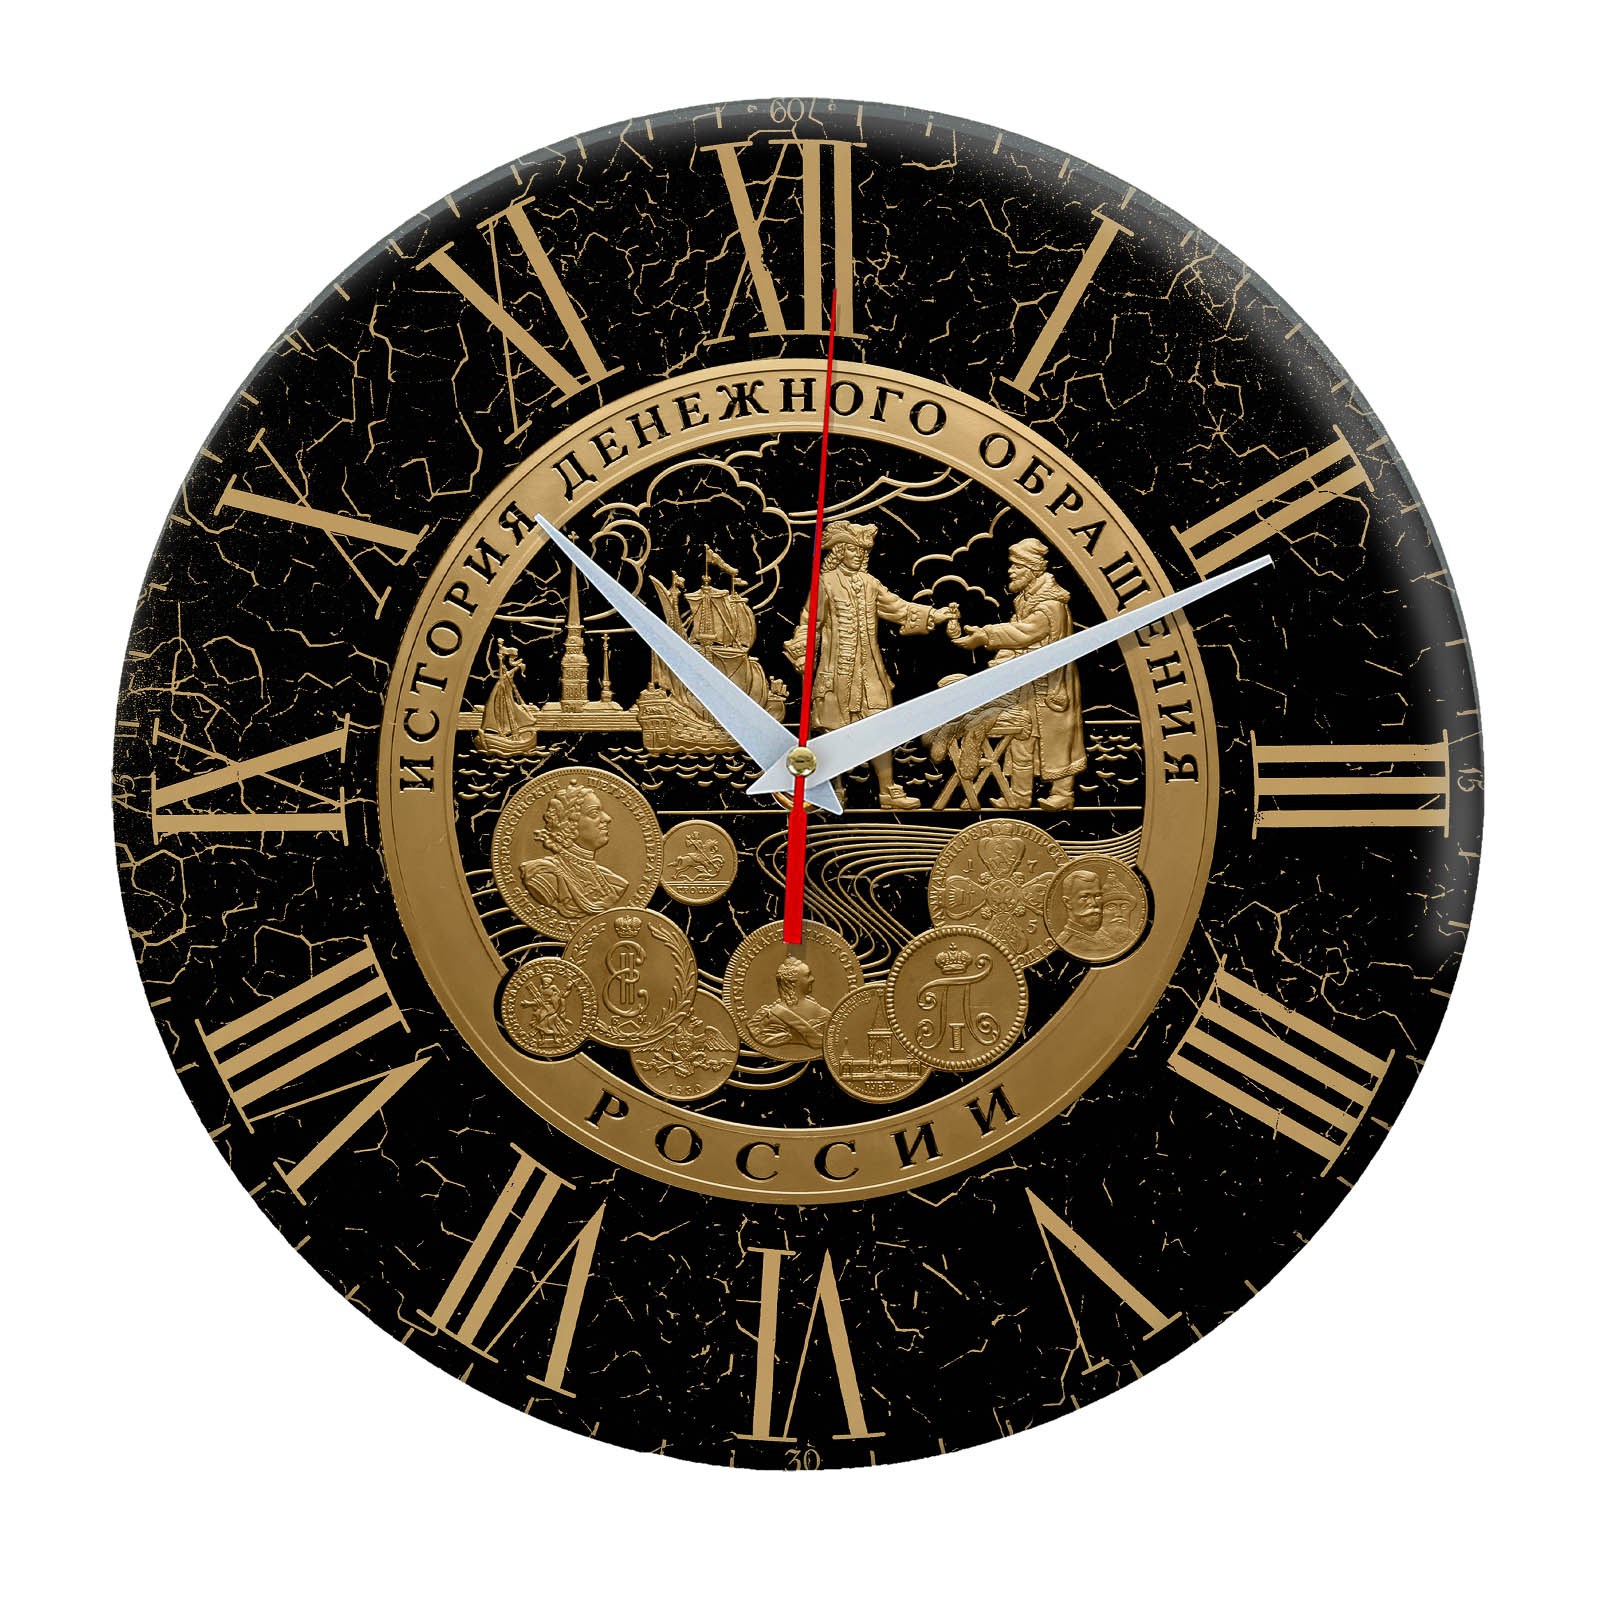 Российские часы история. Часы настенные. Часы сувенир. Часы настенные сувенирные. Часы подарочные настенные.